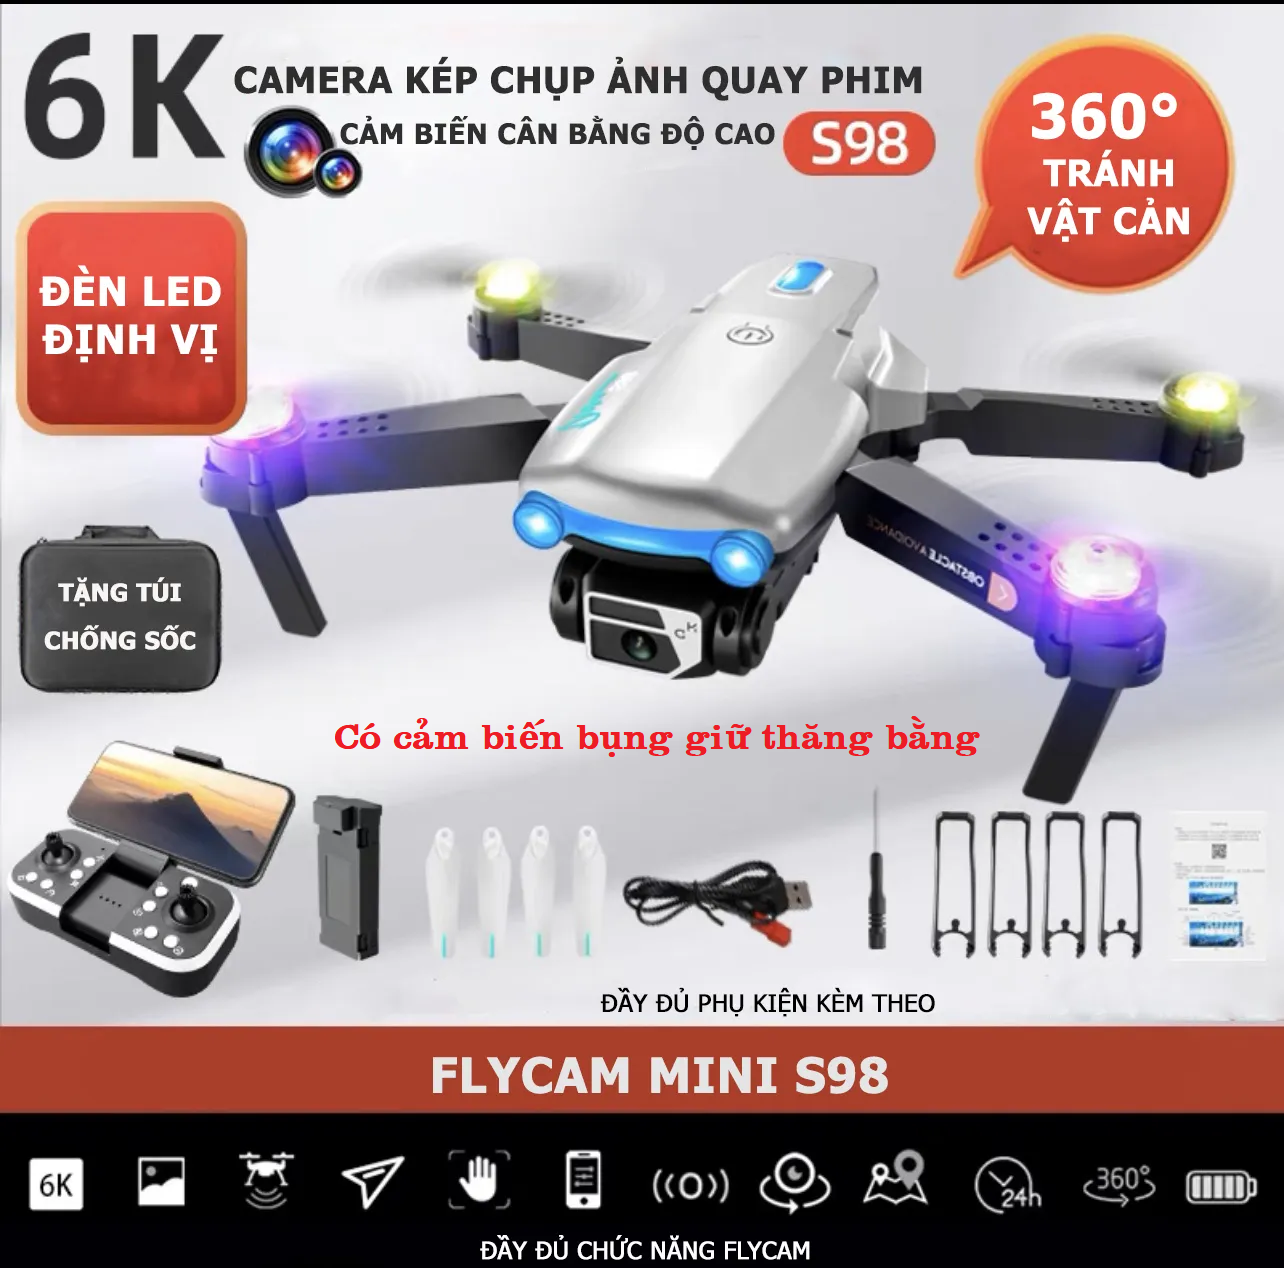 Flycam mini 4k, Flycam giá rẻ S98 Pro Max Cảm biến chống va chạm 4 chiều, đèn led bay ban đêm, cảm biến bụng giữ thăng bằng khi bay, nhào lộn 360 độ